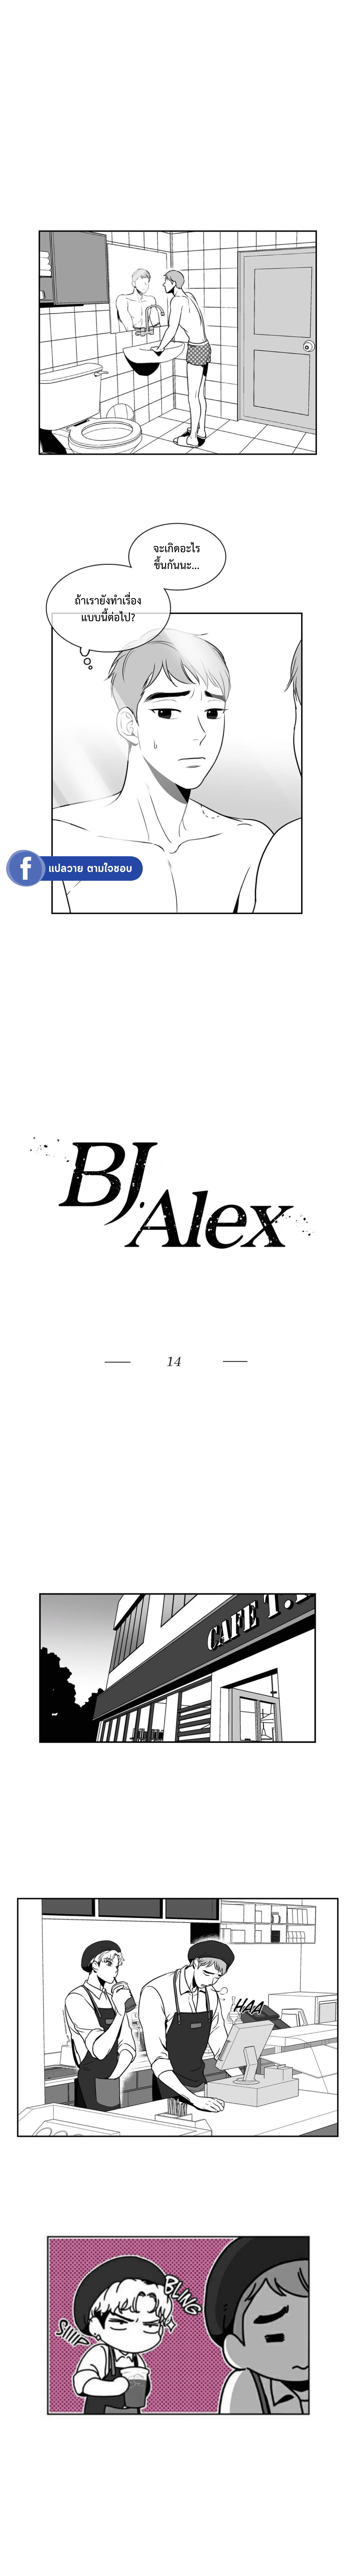 BJ Alex 14 02